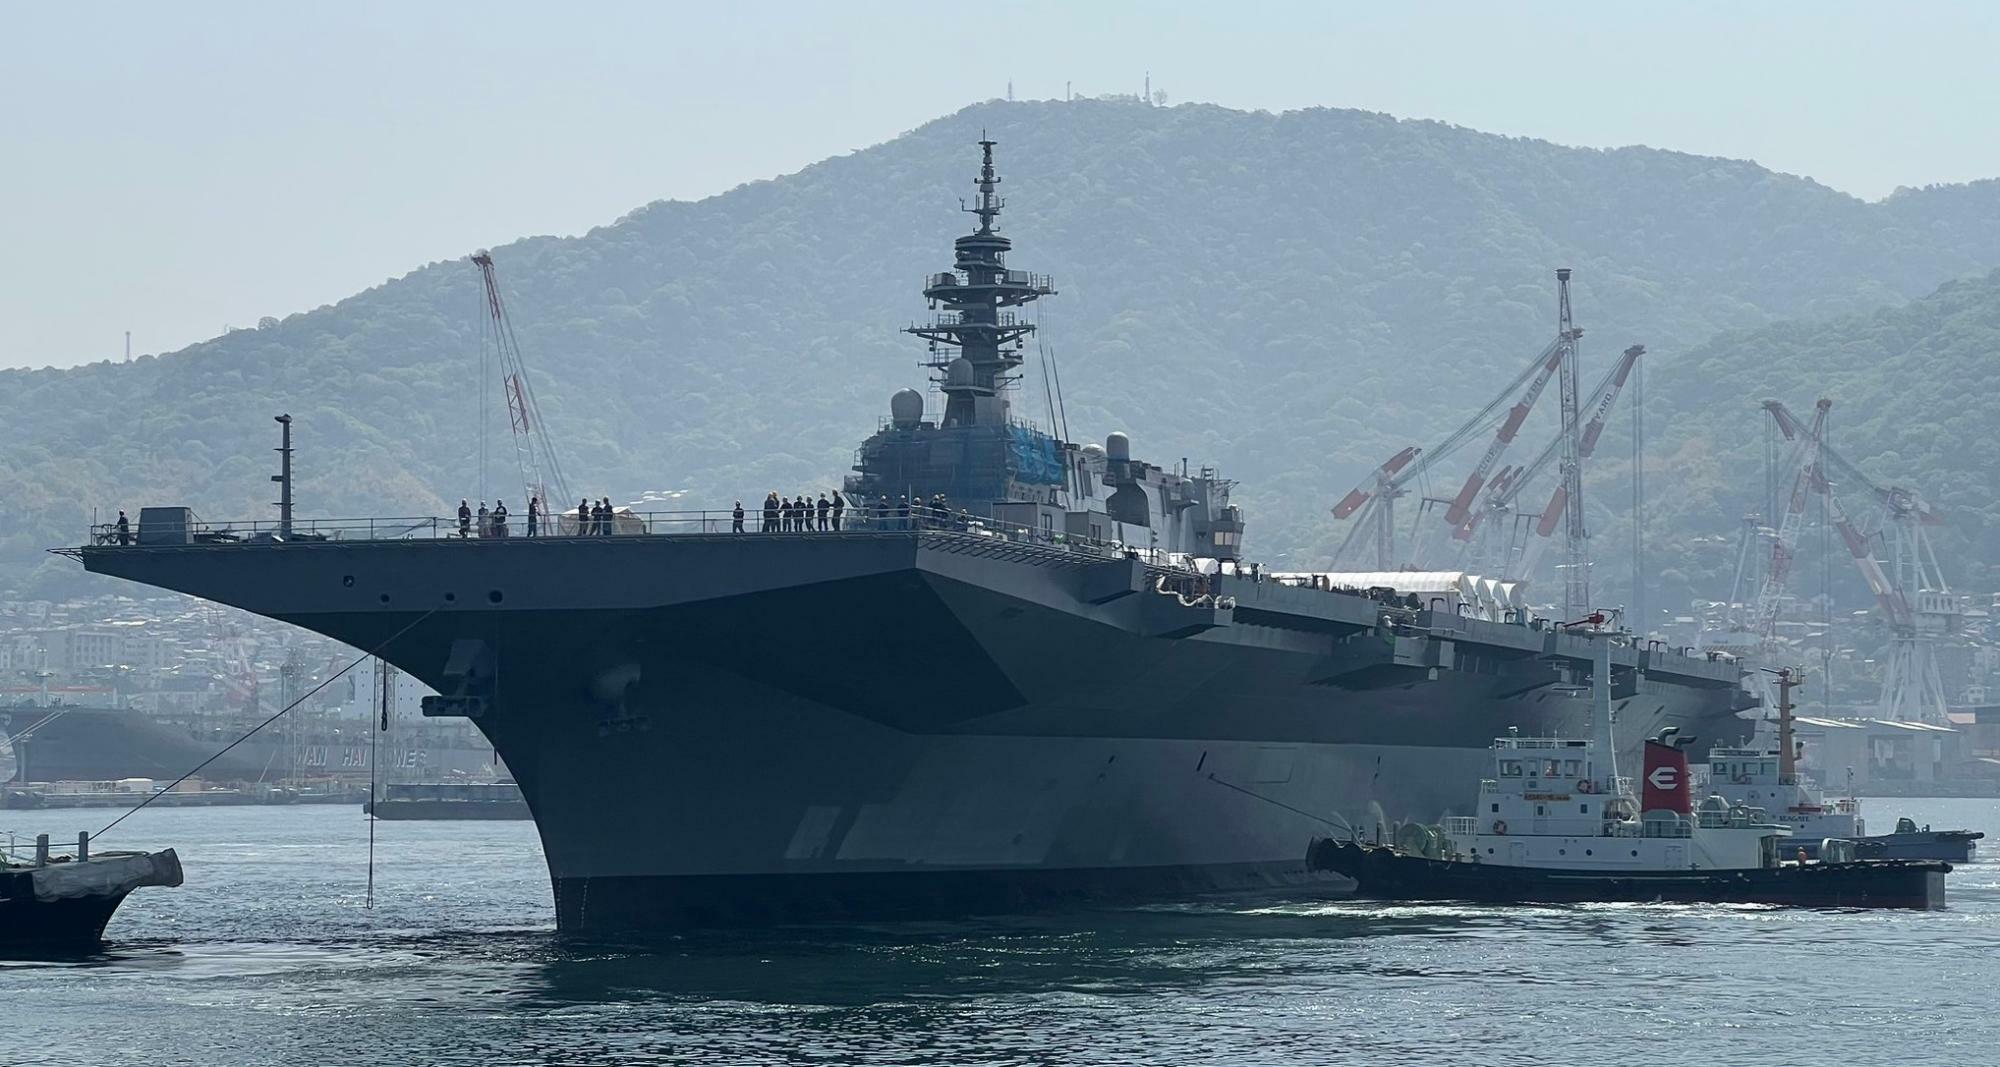 艦首が矩形に改修され、約1年ぶりに出渠した護衛艦かが（2023年4月20日に秋山健さん撮影、提供）